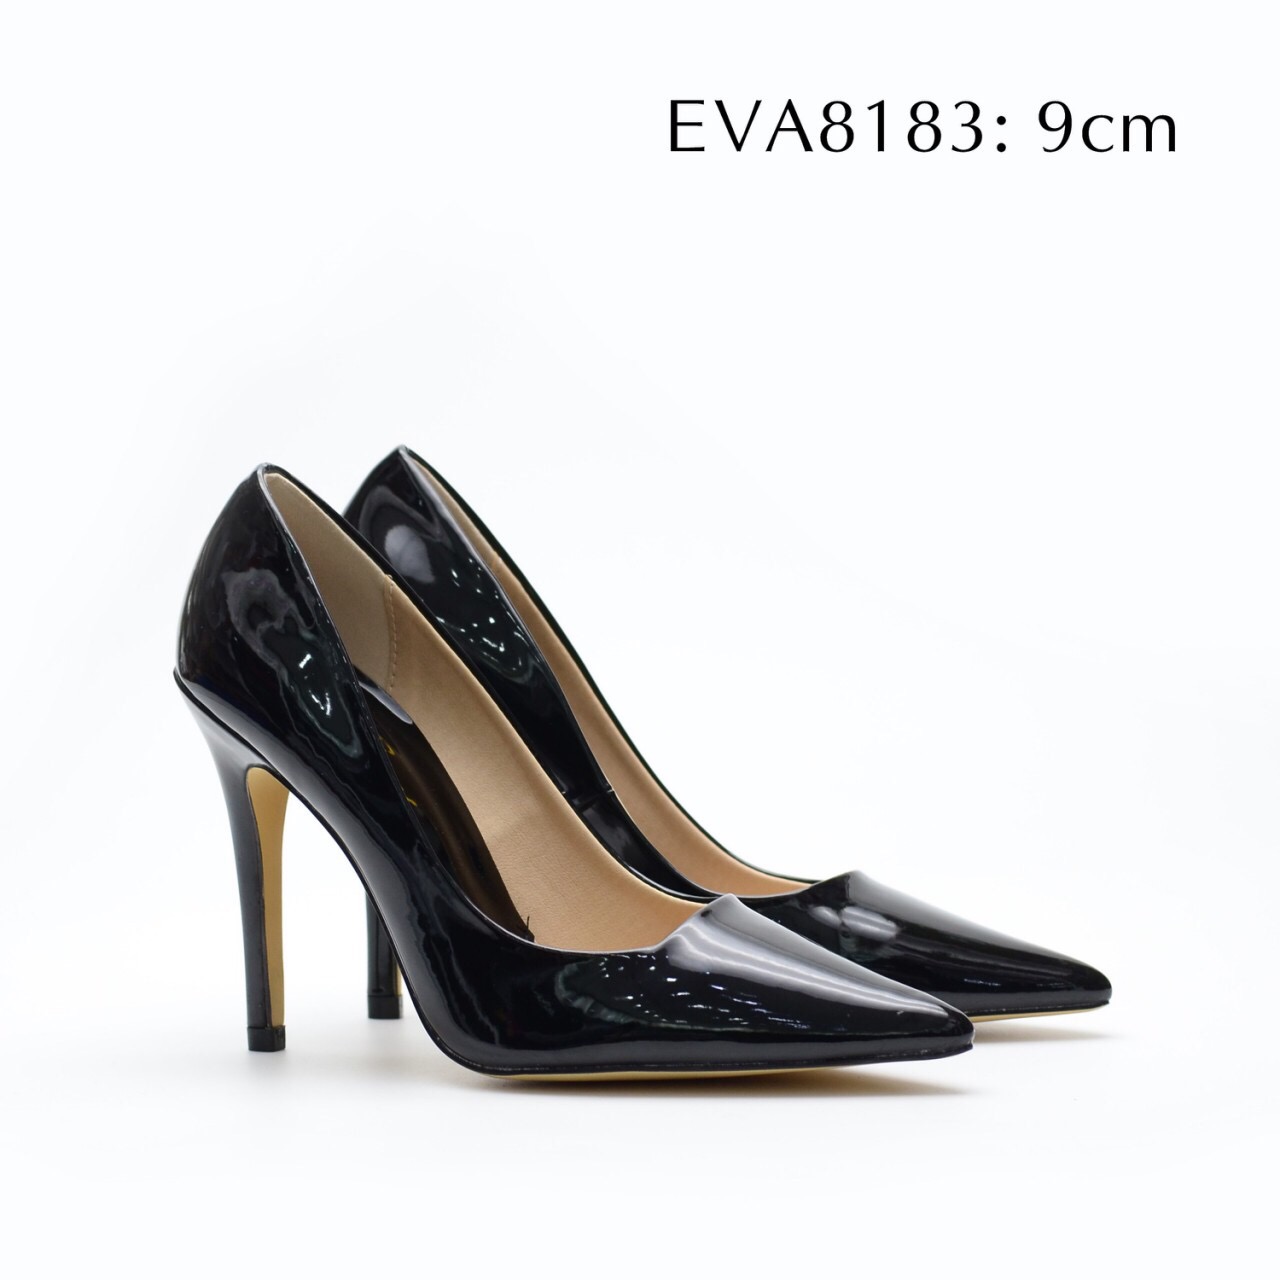 Giày cao gót mảnh mai EVA8183 cao 9cm cho bạn vẻ thanh thoát và kiêu sa